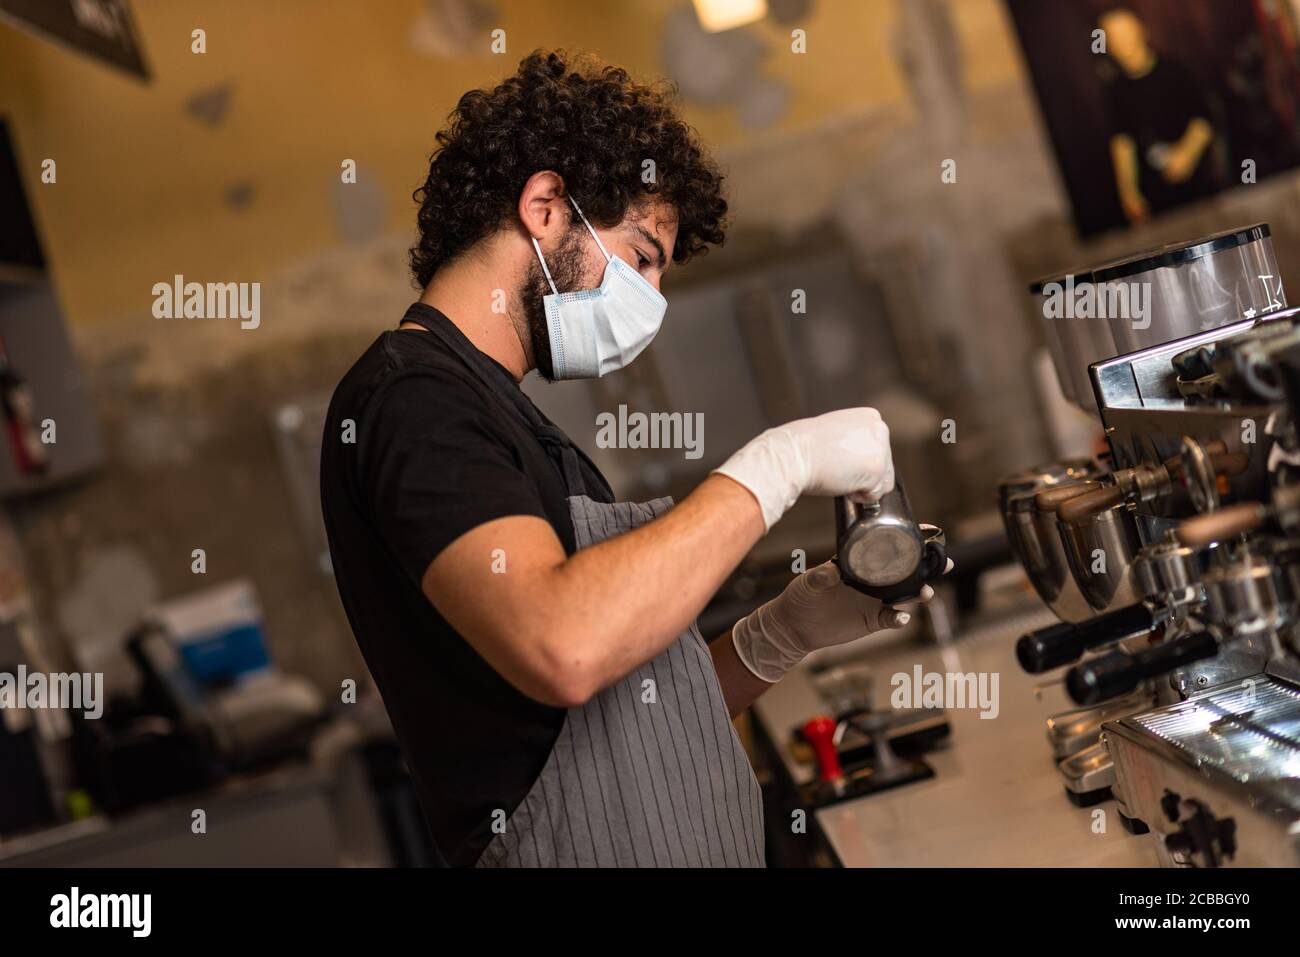 Jeune homme, barista, qui prépare un café expresso tout en portant un masque chirurgical et des gants pour prévenir la propagation du virus corona - concept de travail de sécurité du Bar. Banque D'Images